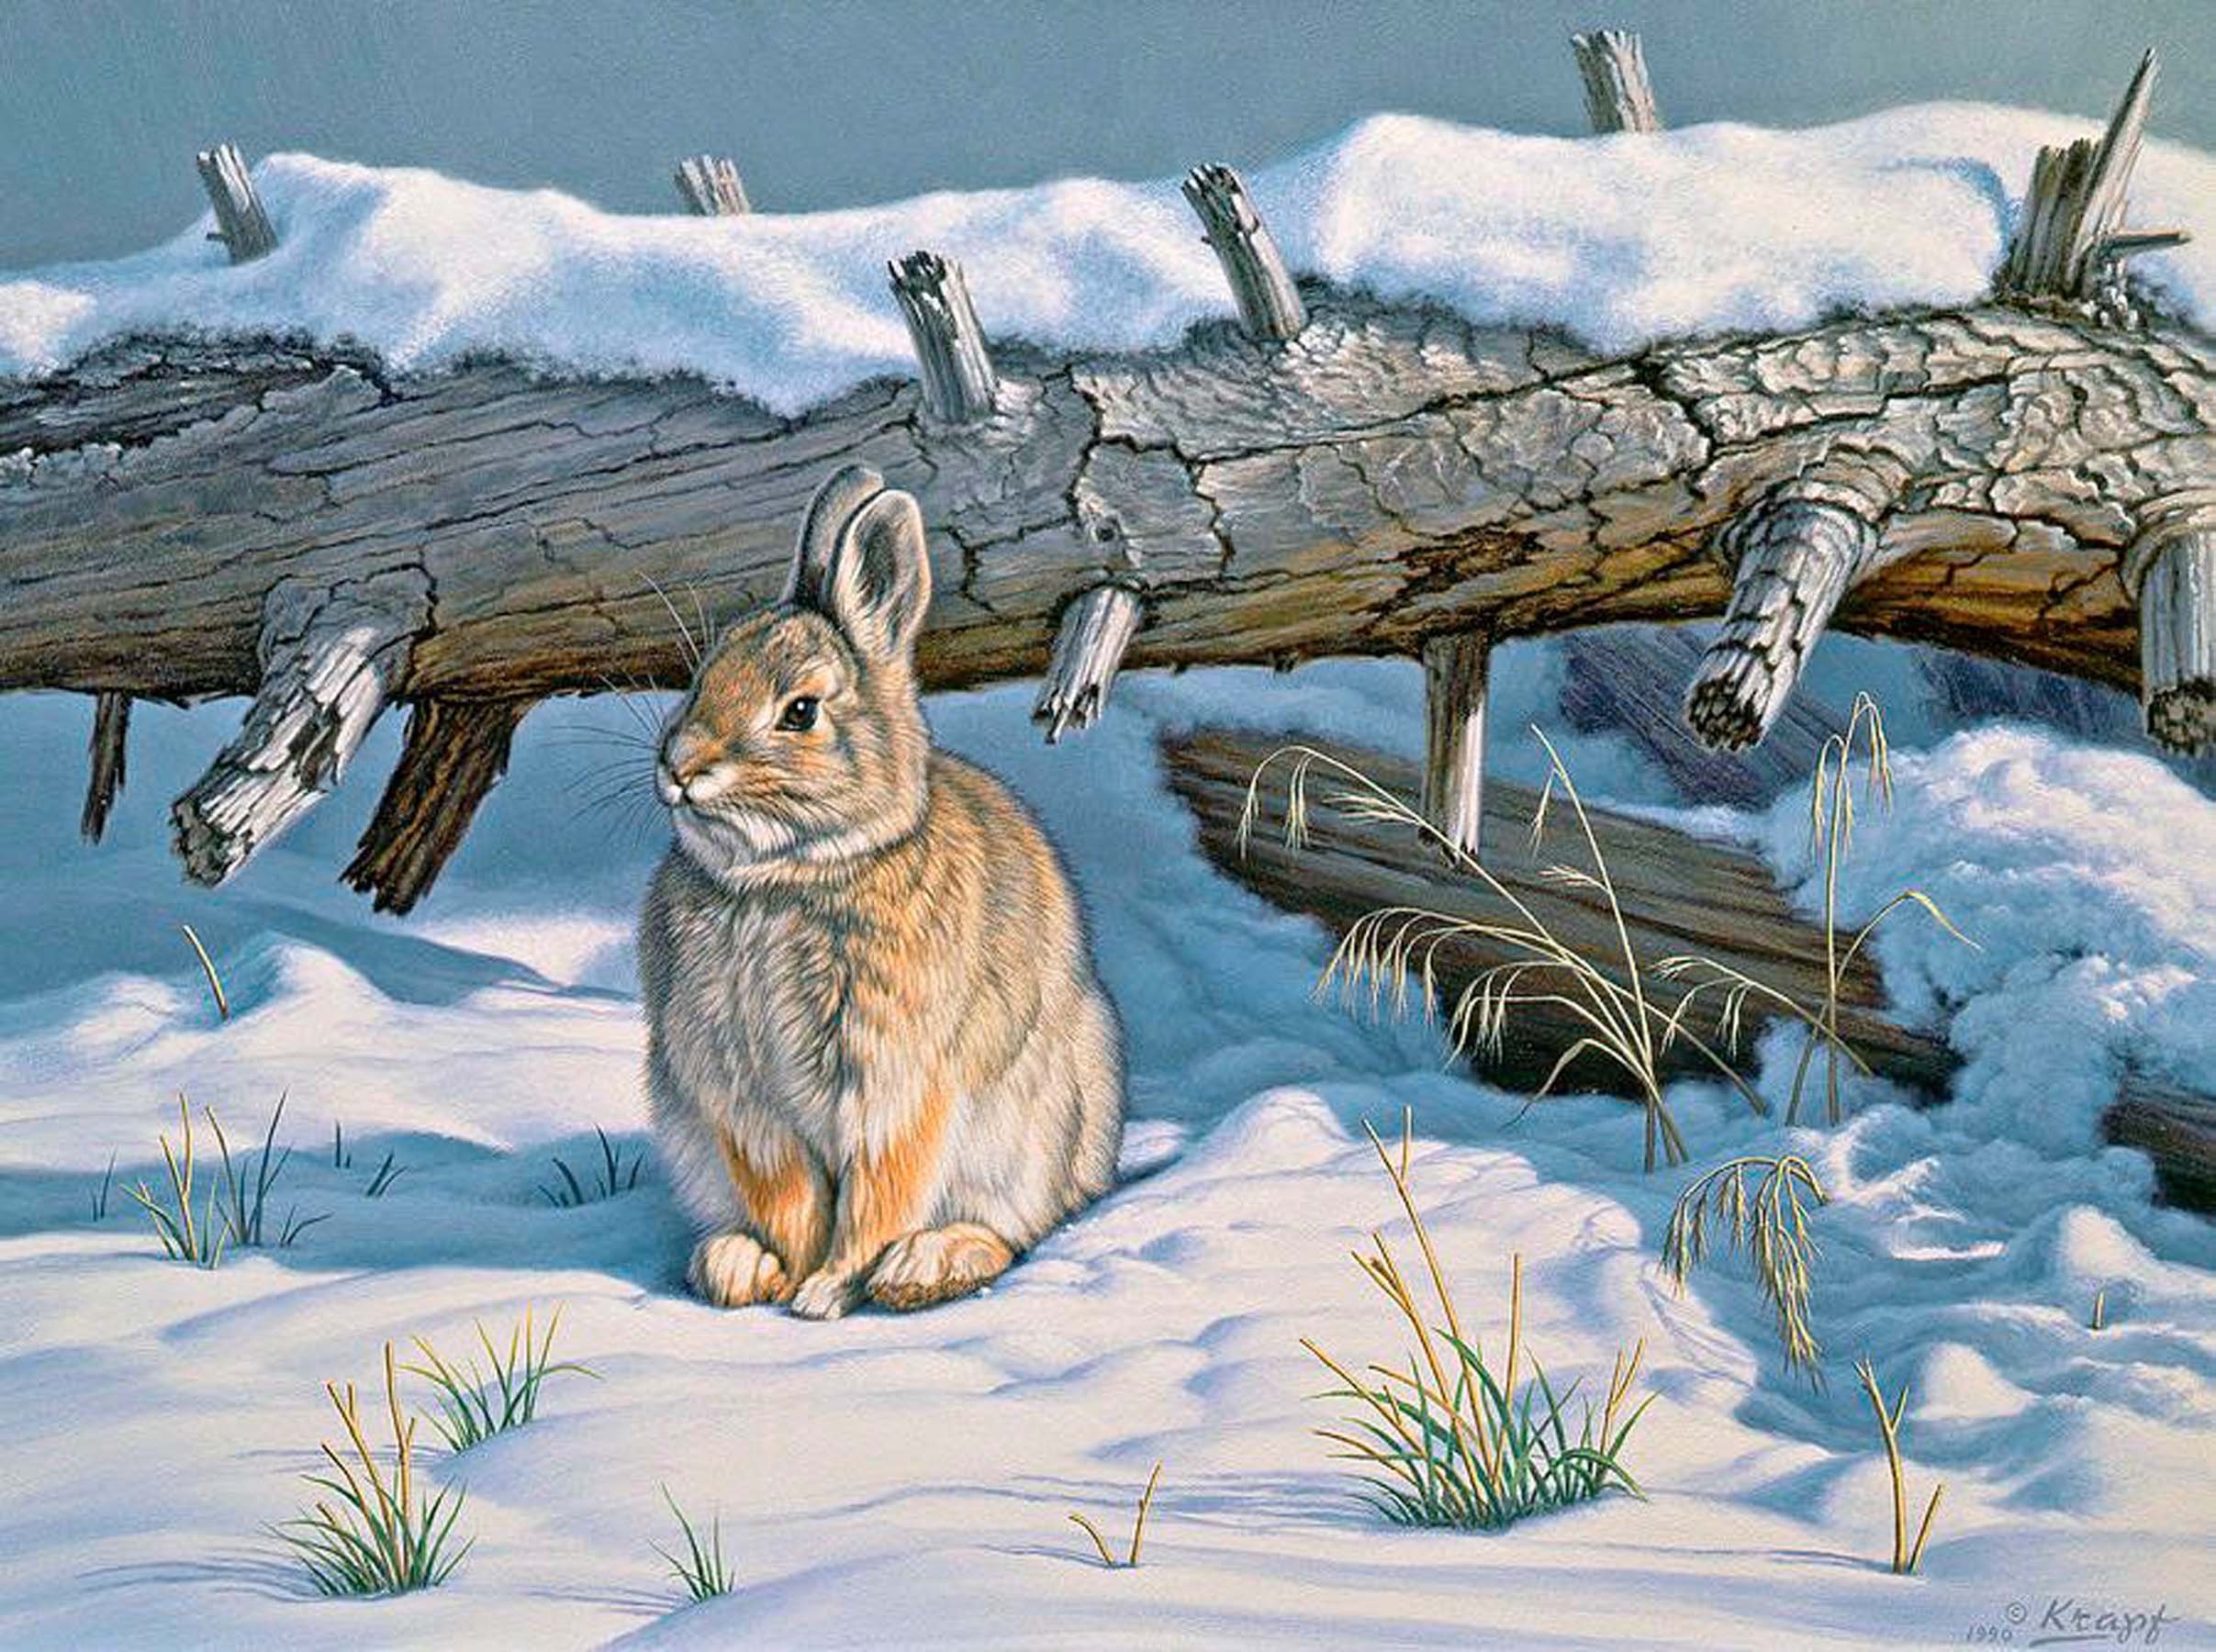 Берлога зайца. Пауль Крапф заяц. Заяц Беляк в лесу рисунок. Заяц художники анималисты. Художник - анималист Paul Krapf.